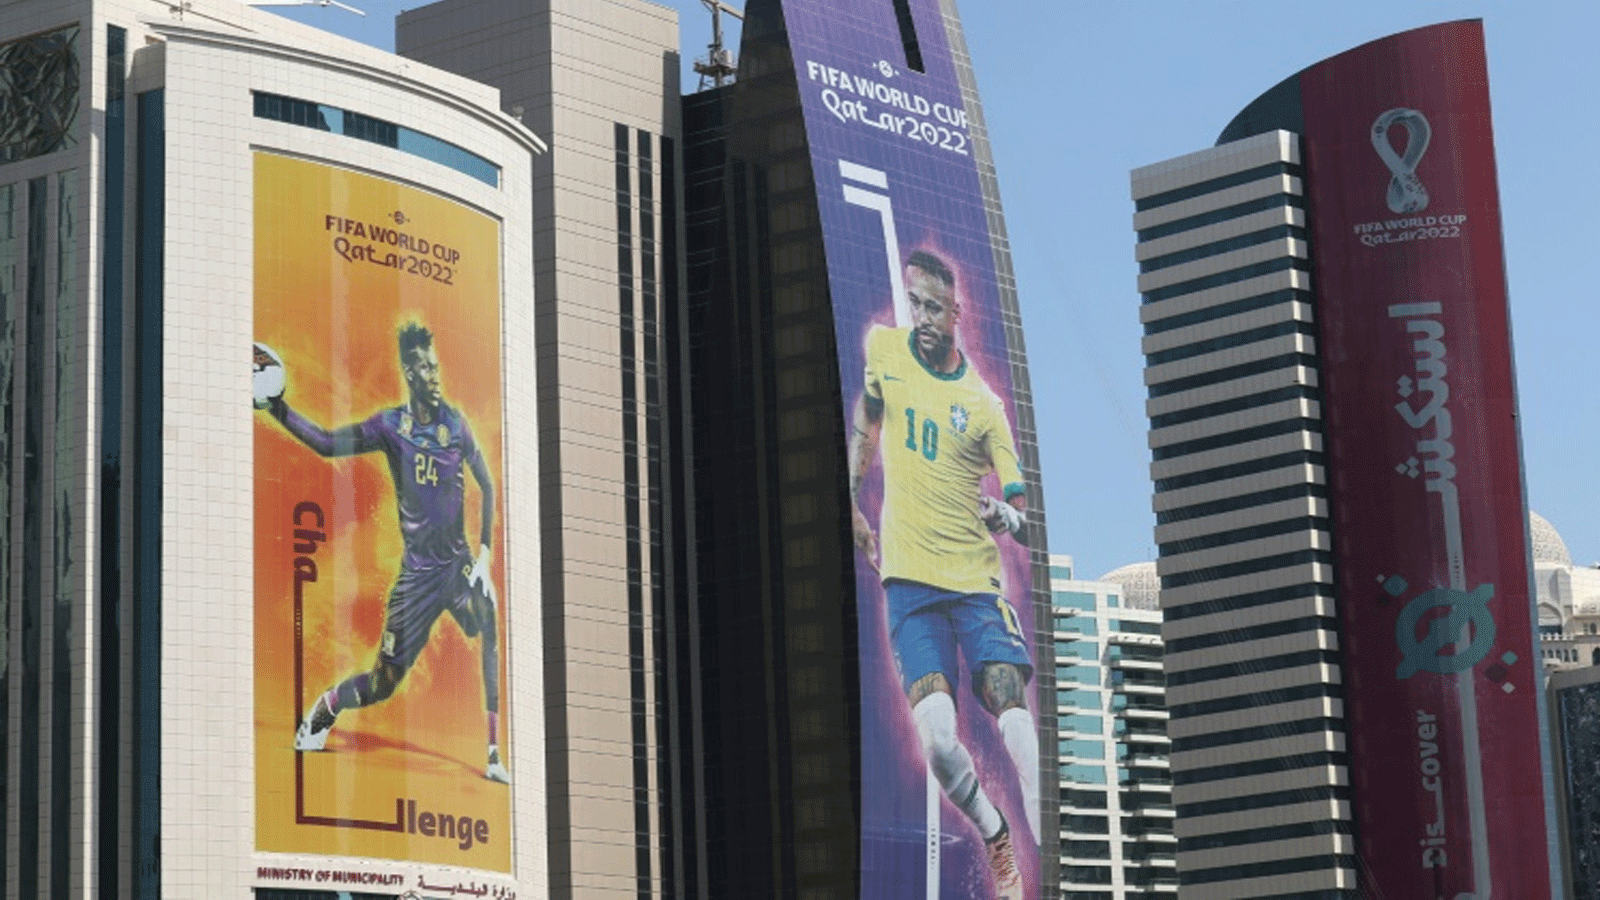 لافتات تُظهر نجوم كرة القدم على مبان شاهقة في الدوحة. 11 تشرين الأول/أكتوبر 2022